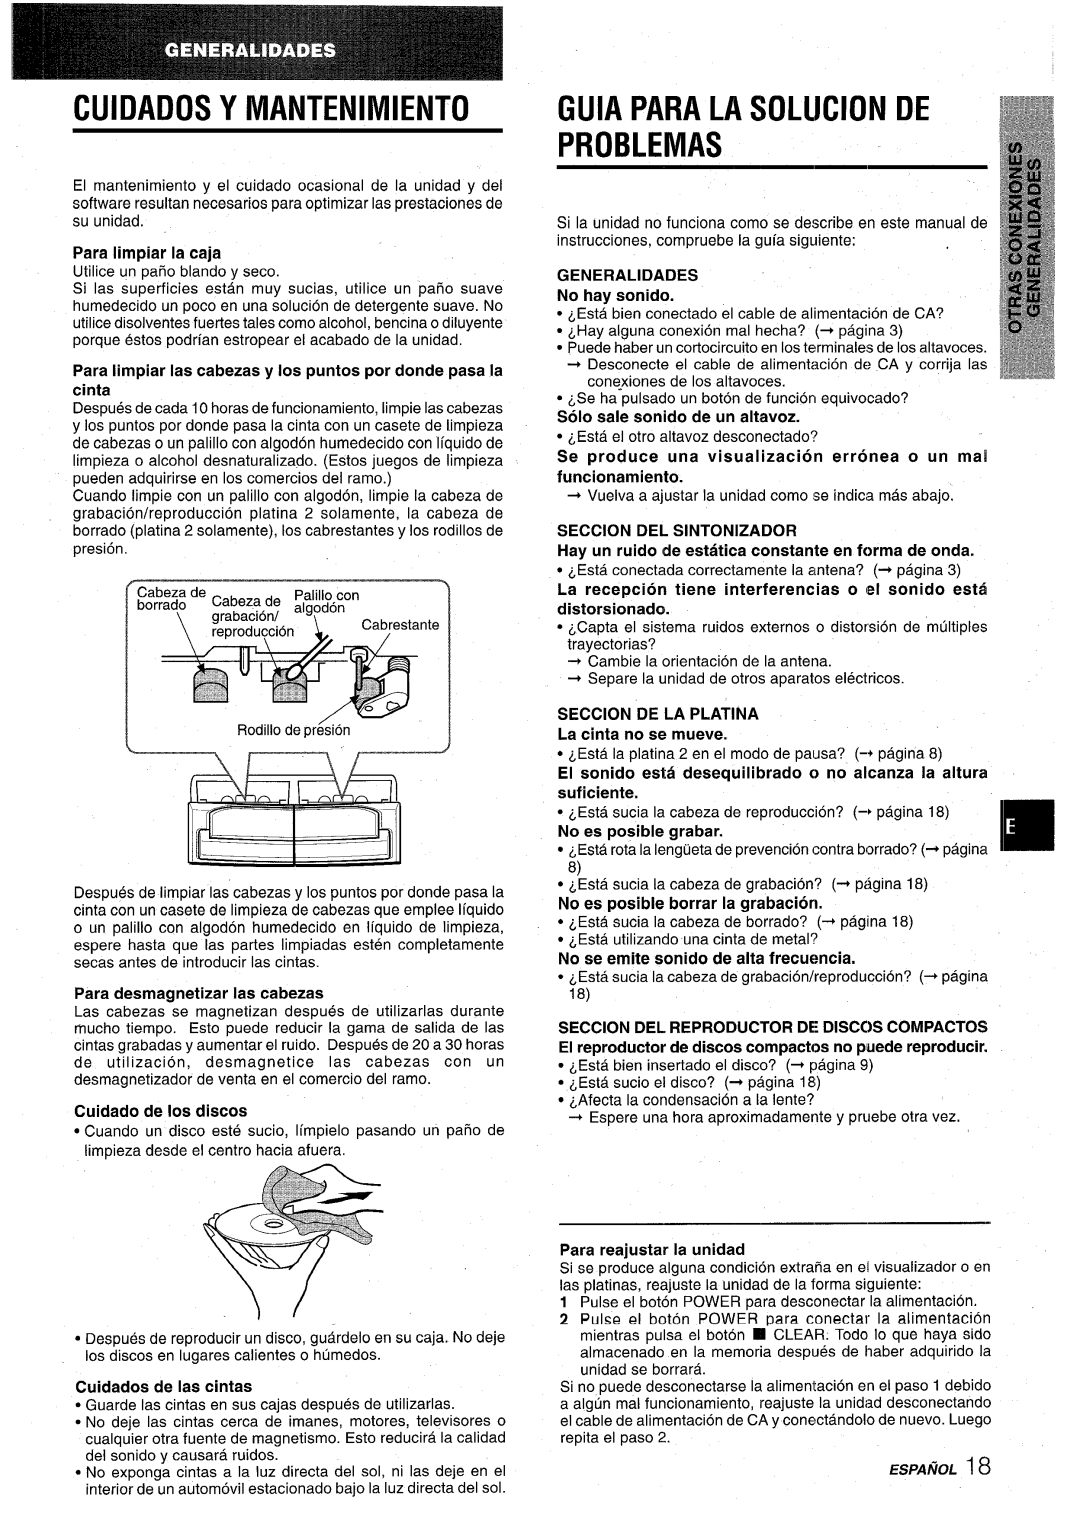 Aiwa CX-NA22 manual Cuidados Y Mantenimiento, Guia Para La Solucionde Problemas, r-----n”r, Para desmagnetizar Ias cabezas 